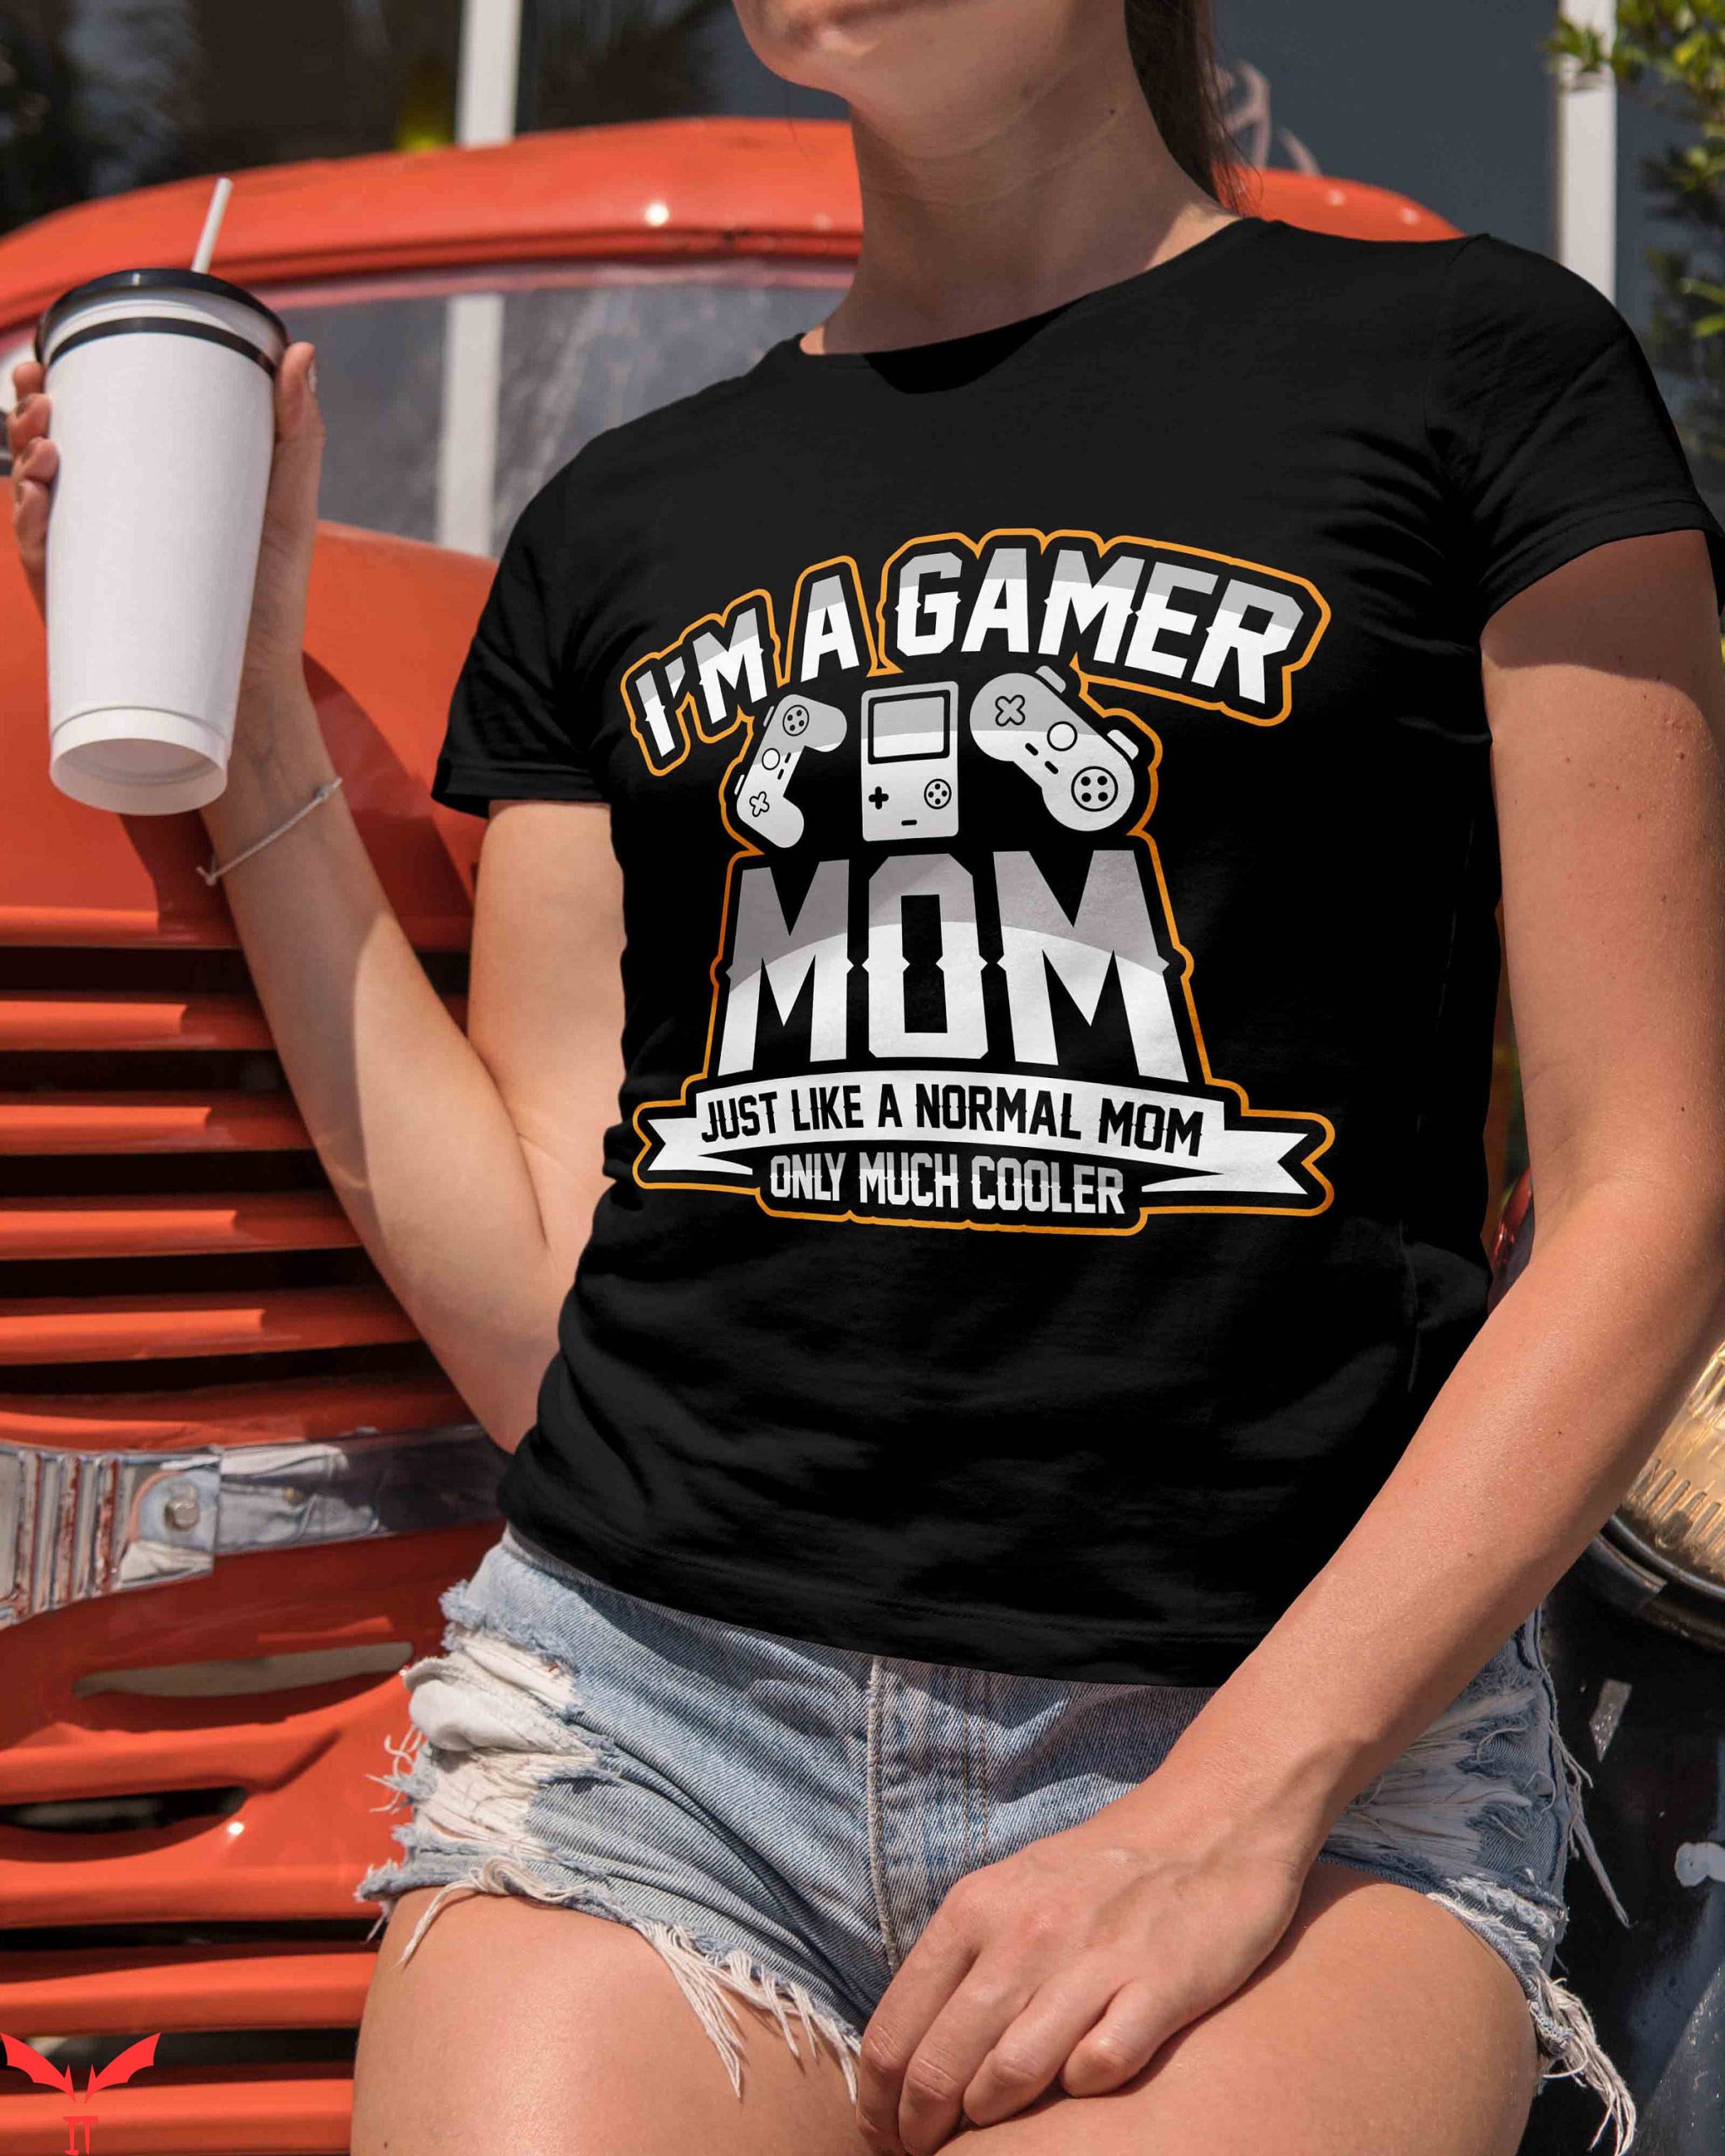 Mom Funny T-Shirt Gamer Mom Trendy Meme Funny Style Tee